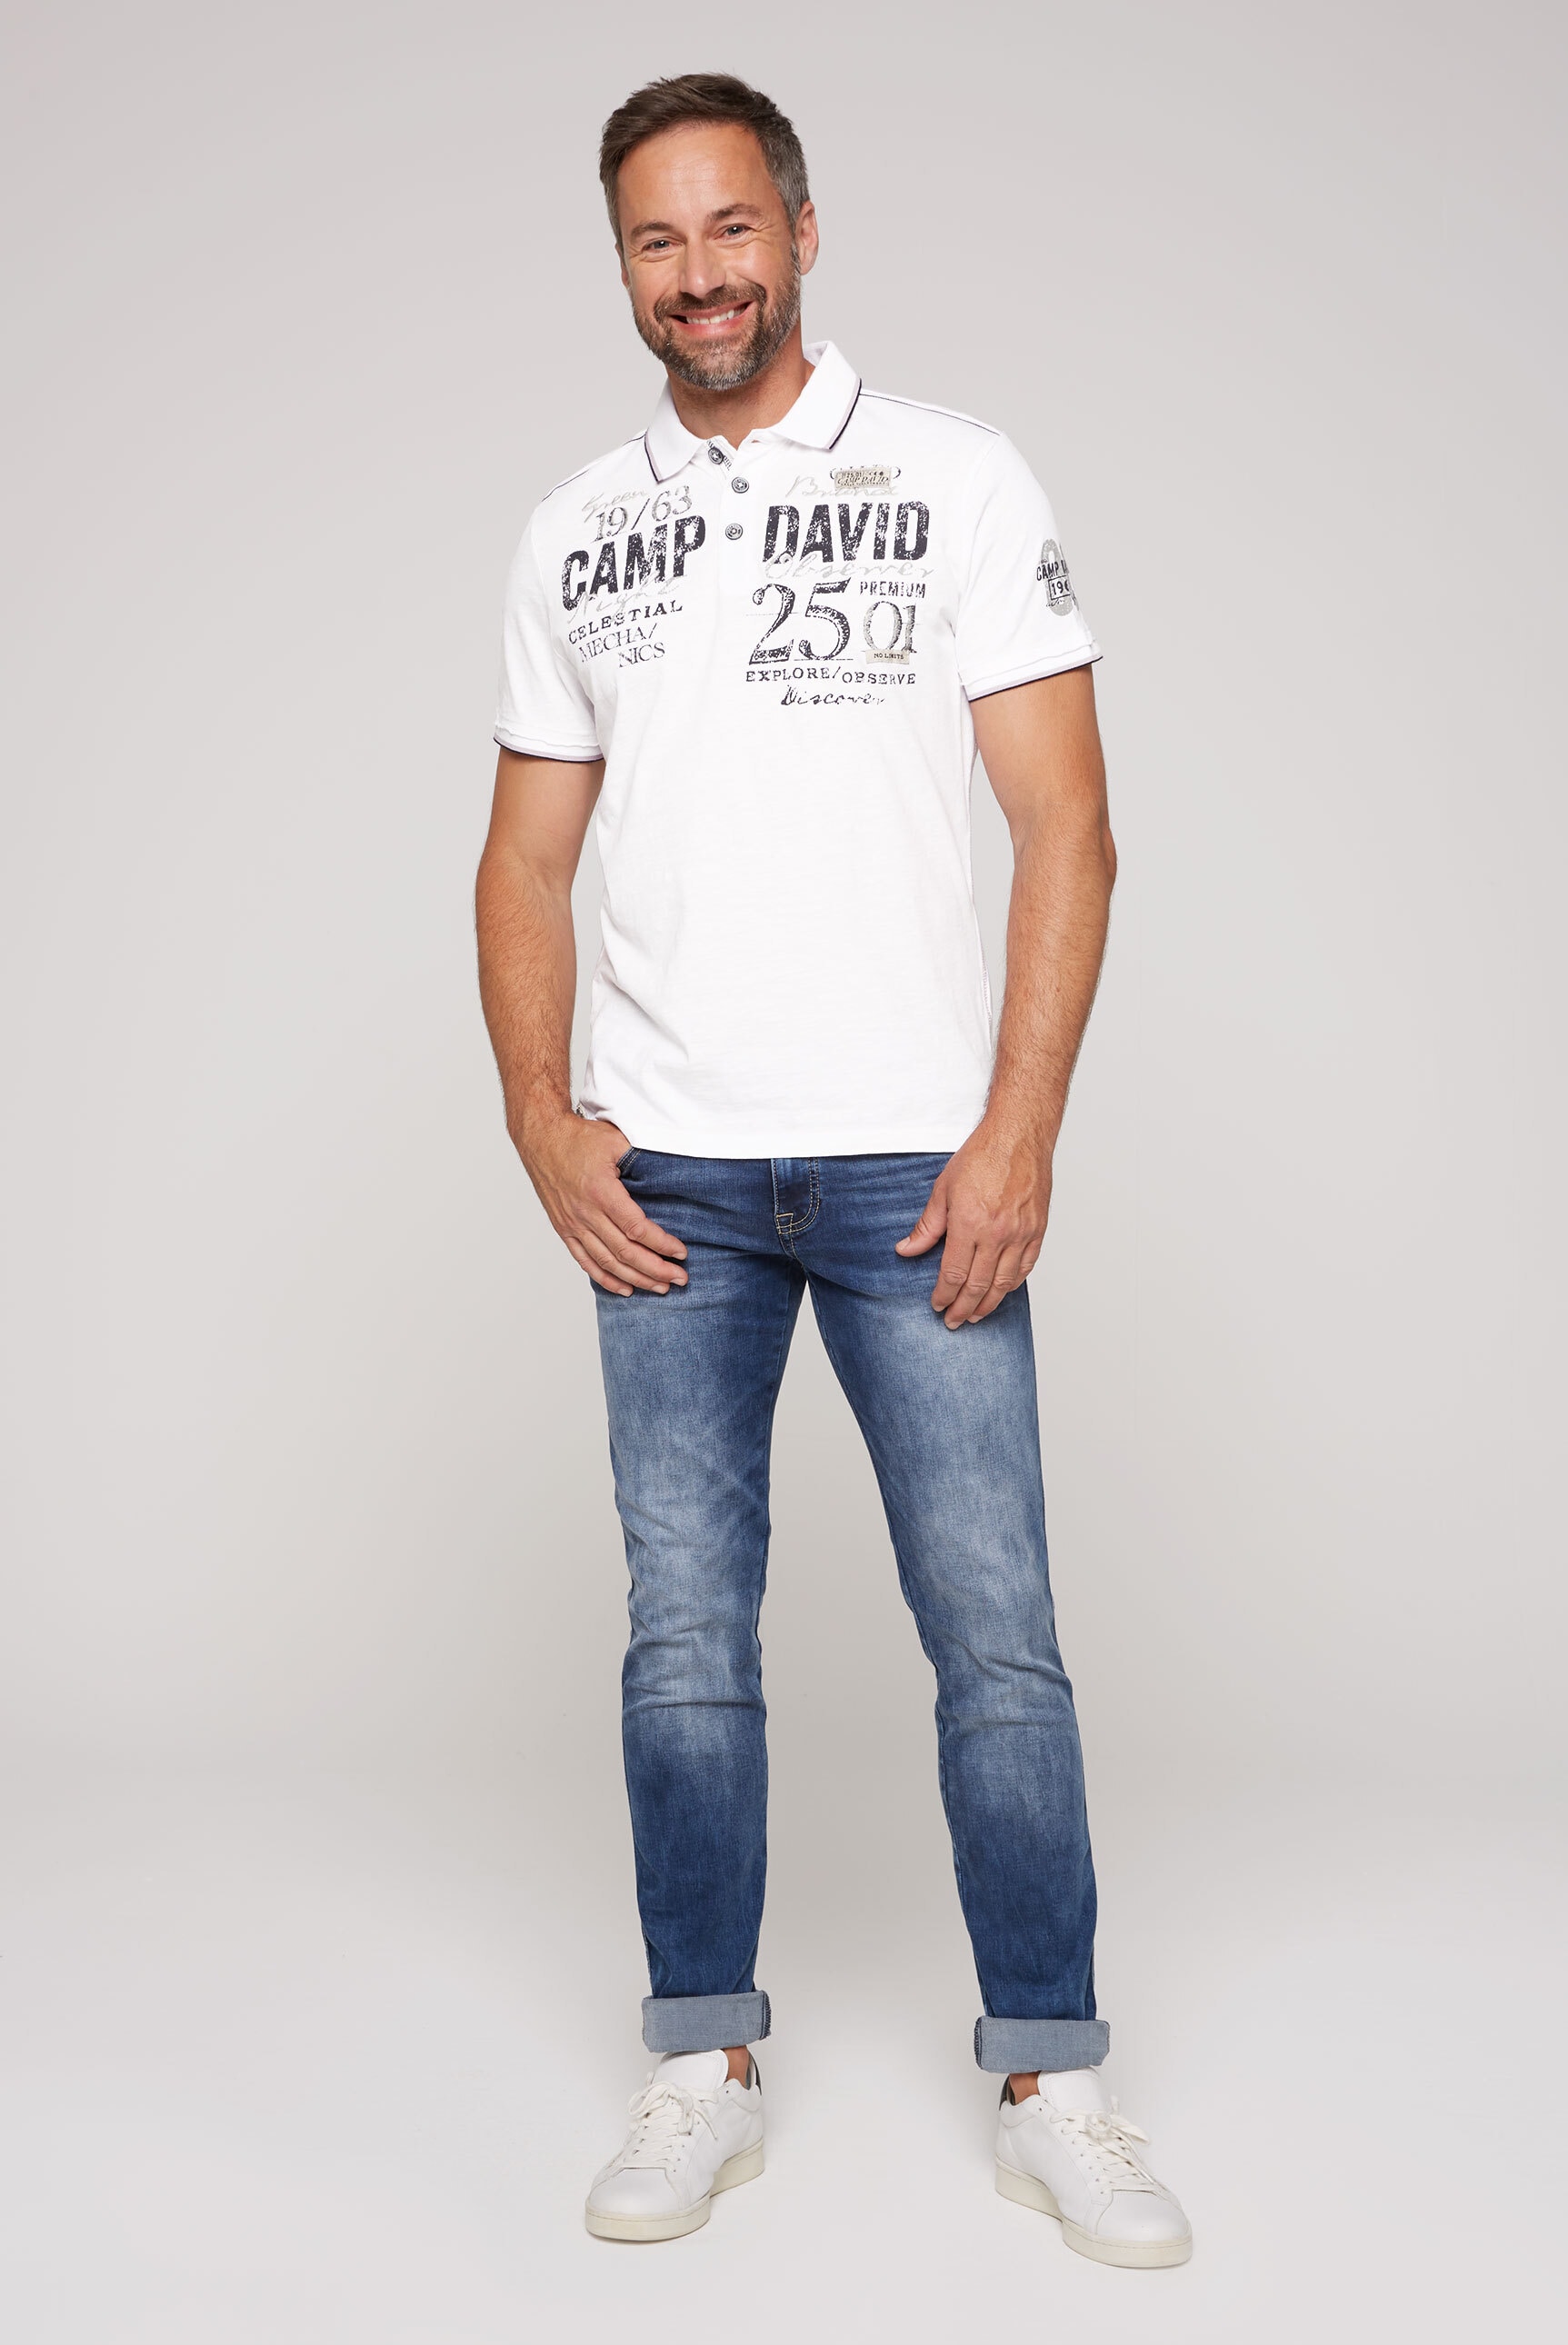 CAMP DAVID bestellen aus Bio-Baumwolle Poloshirt